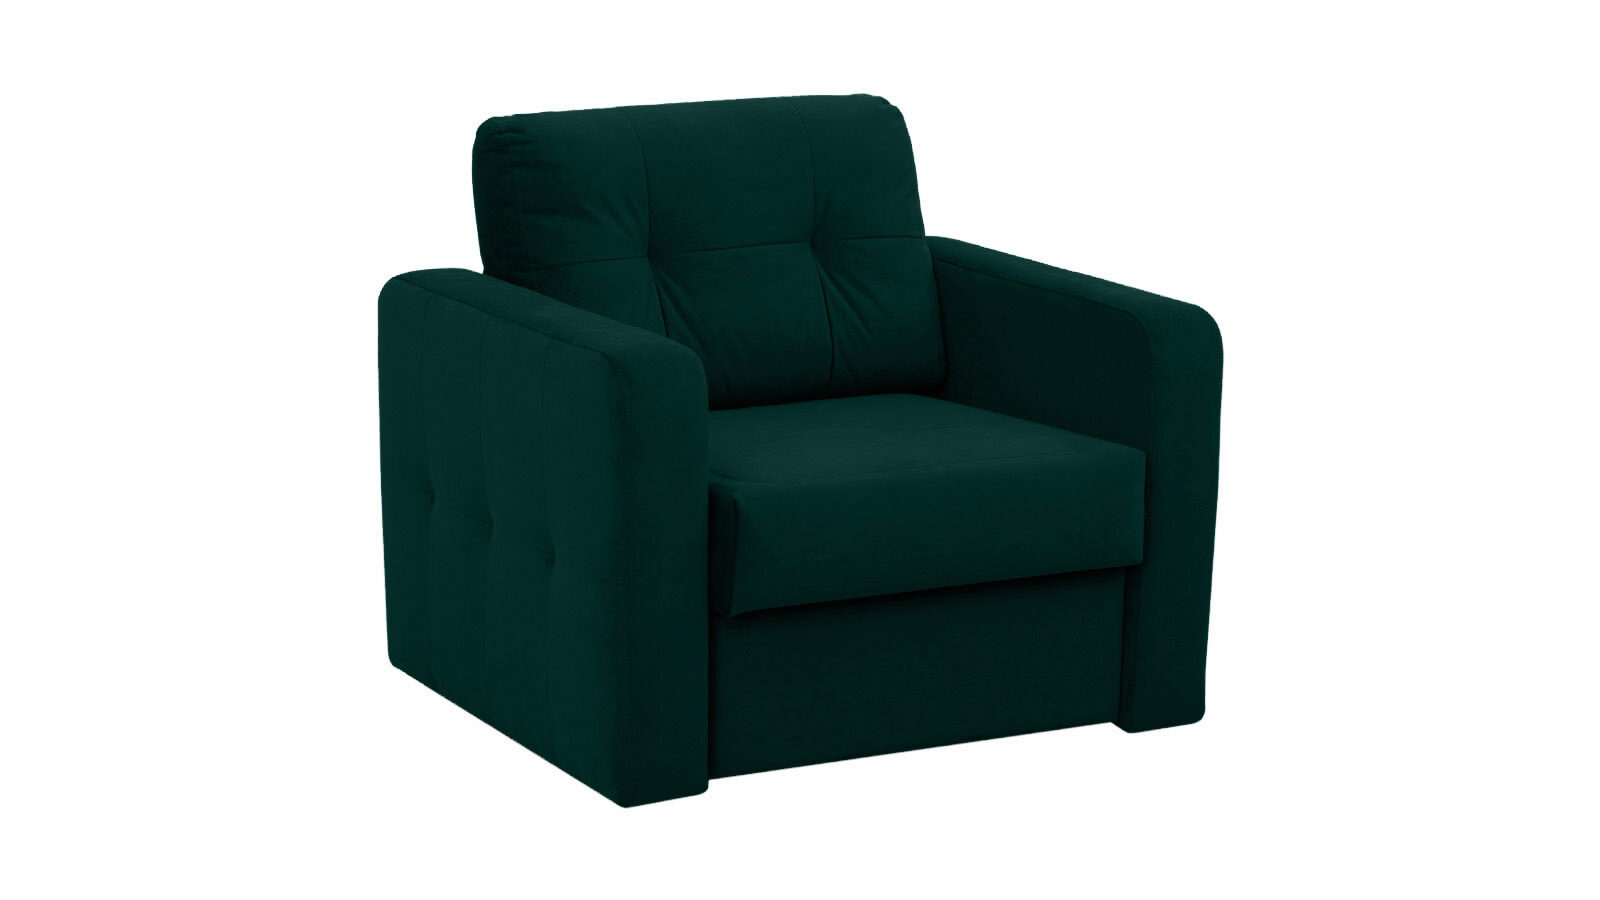 Кресло-кровать Loko Dumont подвесное кресло кокон 110х86х198 см 150 кг green days белое ротанг подушка красная h073 19 1850